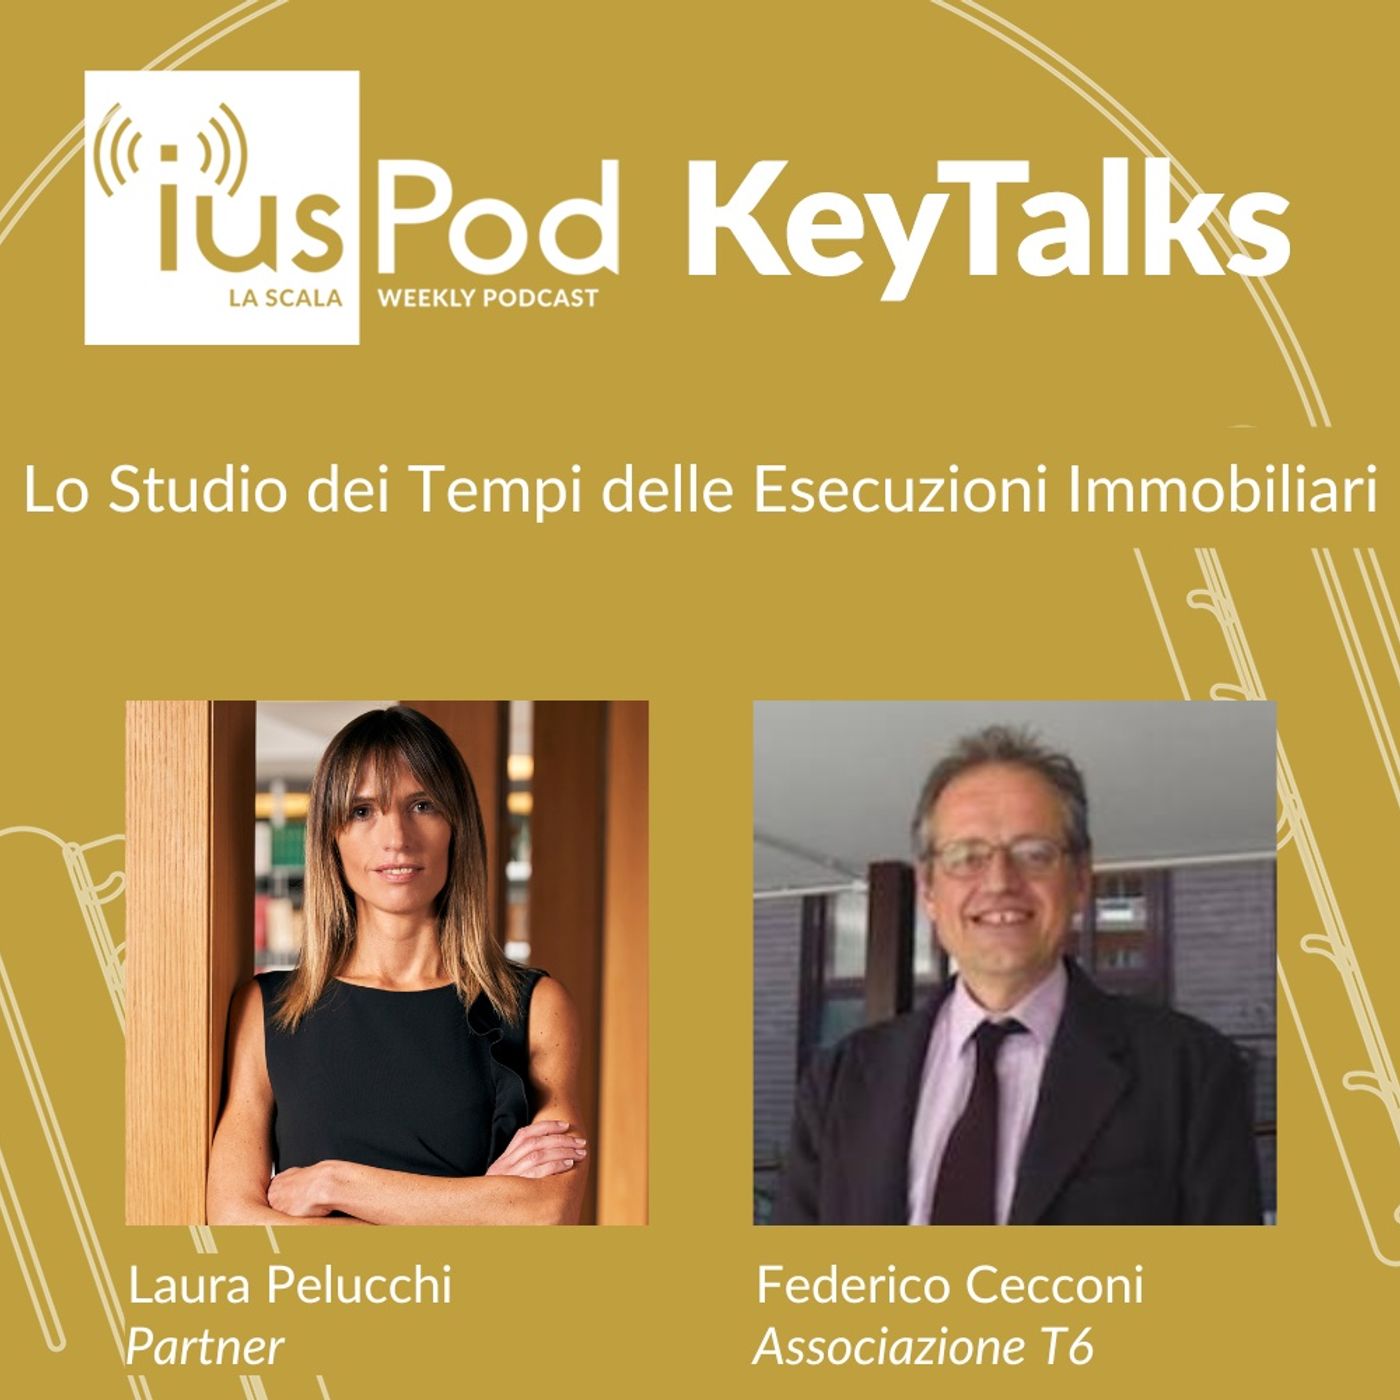 Ep. 11 IusPod KeyTalks Lo Studio dei Tempi delle Esecuzioni Immobiliari